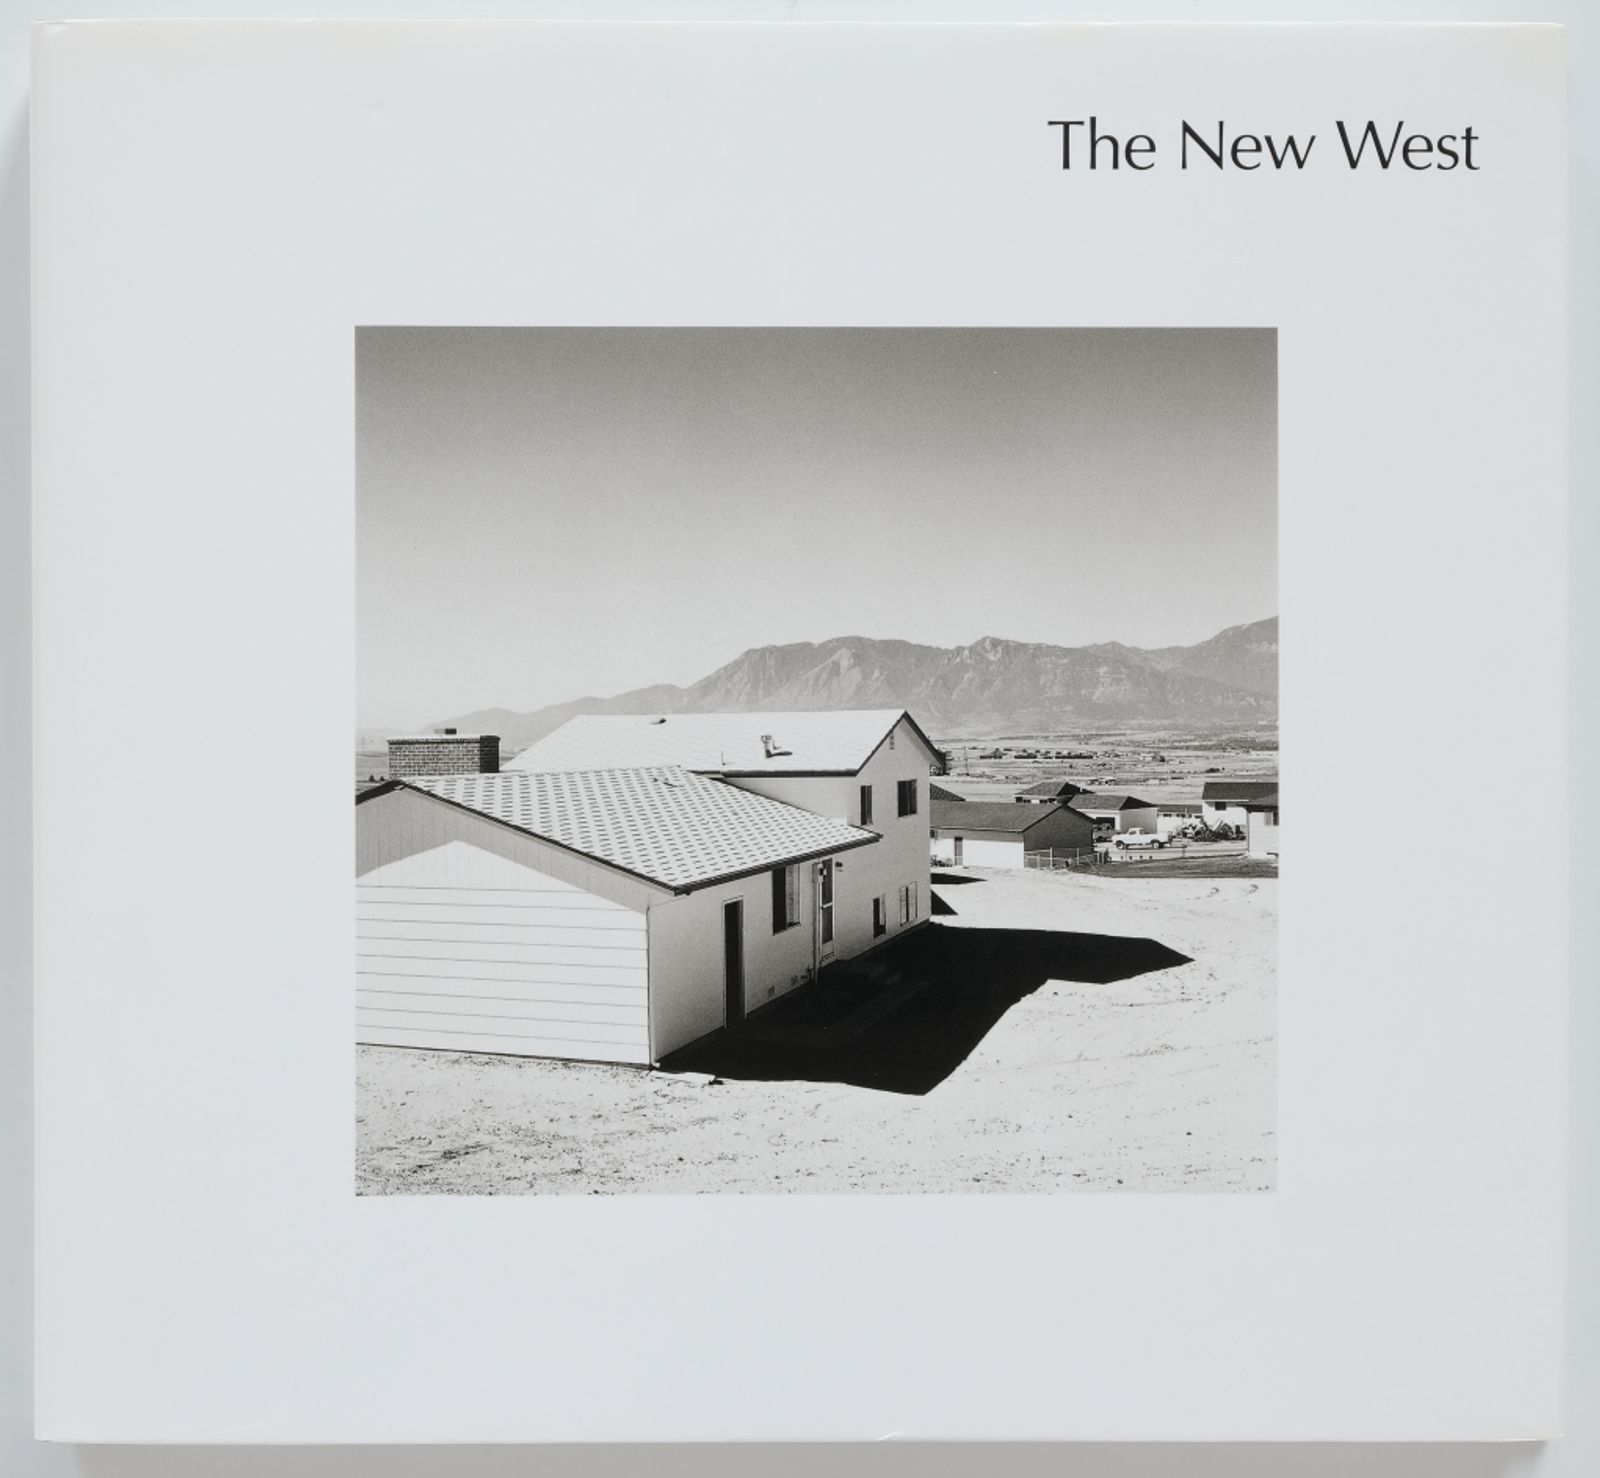 © Photobook Week Aarhus. Cover of Robert Adams' The New West